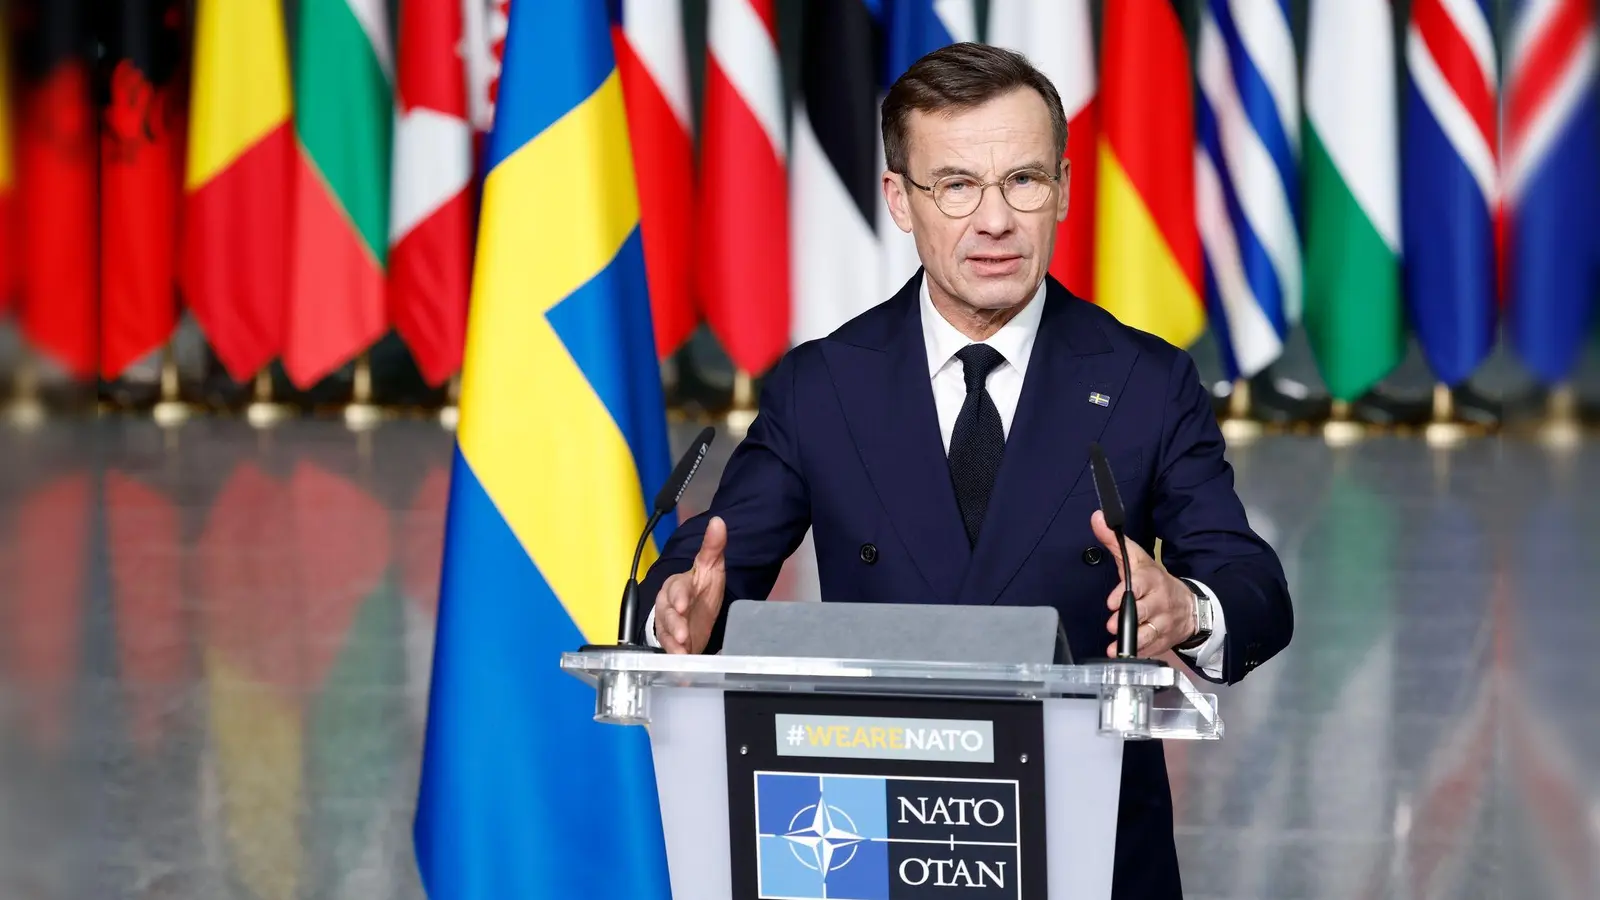 Der schwedische Ministerpräsident Ulf Kristersson spricht bei der Zeremonie zur Aufnahme Schwedens in die Nato in Brüssel. (Foto: Geert Vanden Wijngaert/AP/dpa)